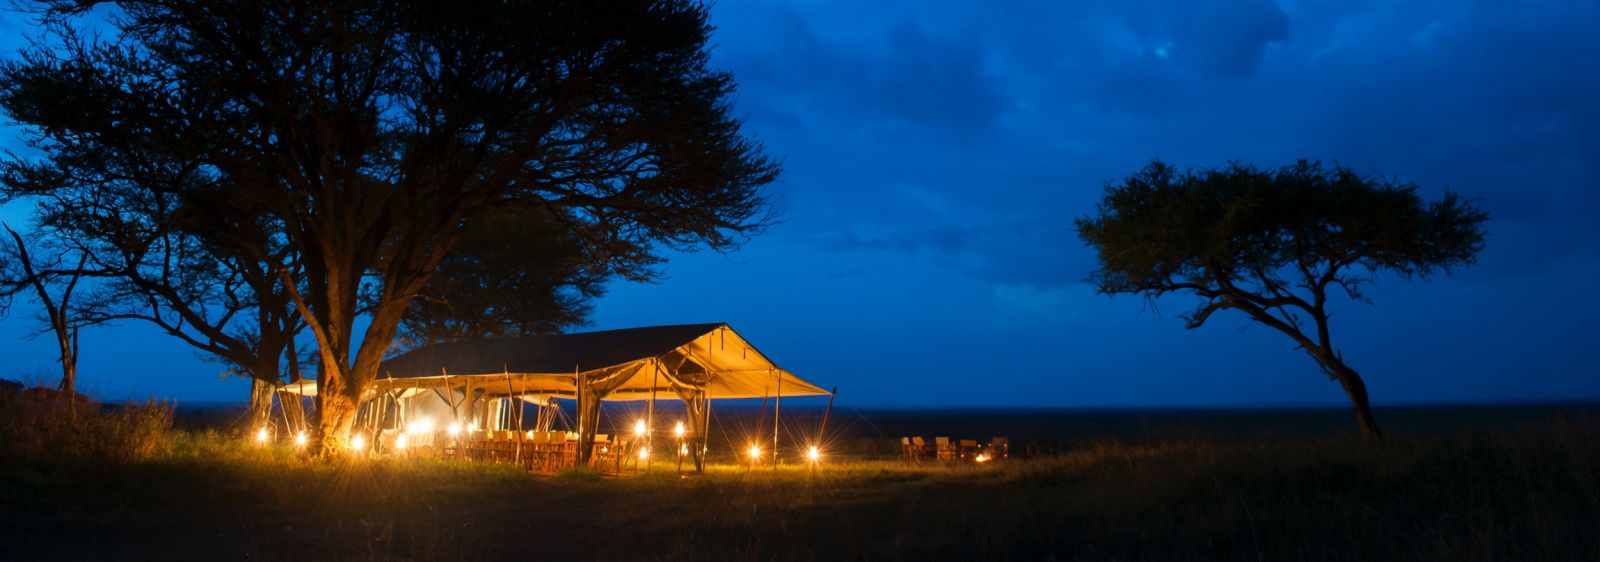 Dining tent at night at Serengeti Safari Camp in Tanzania 